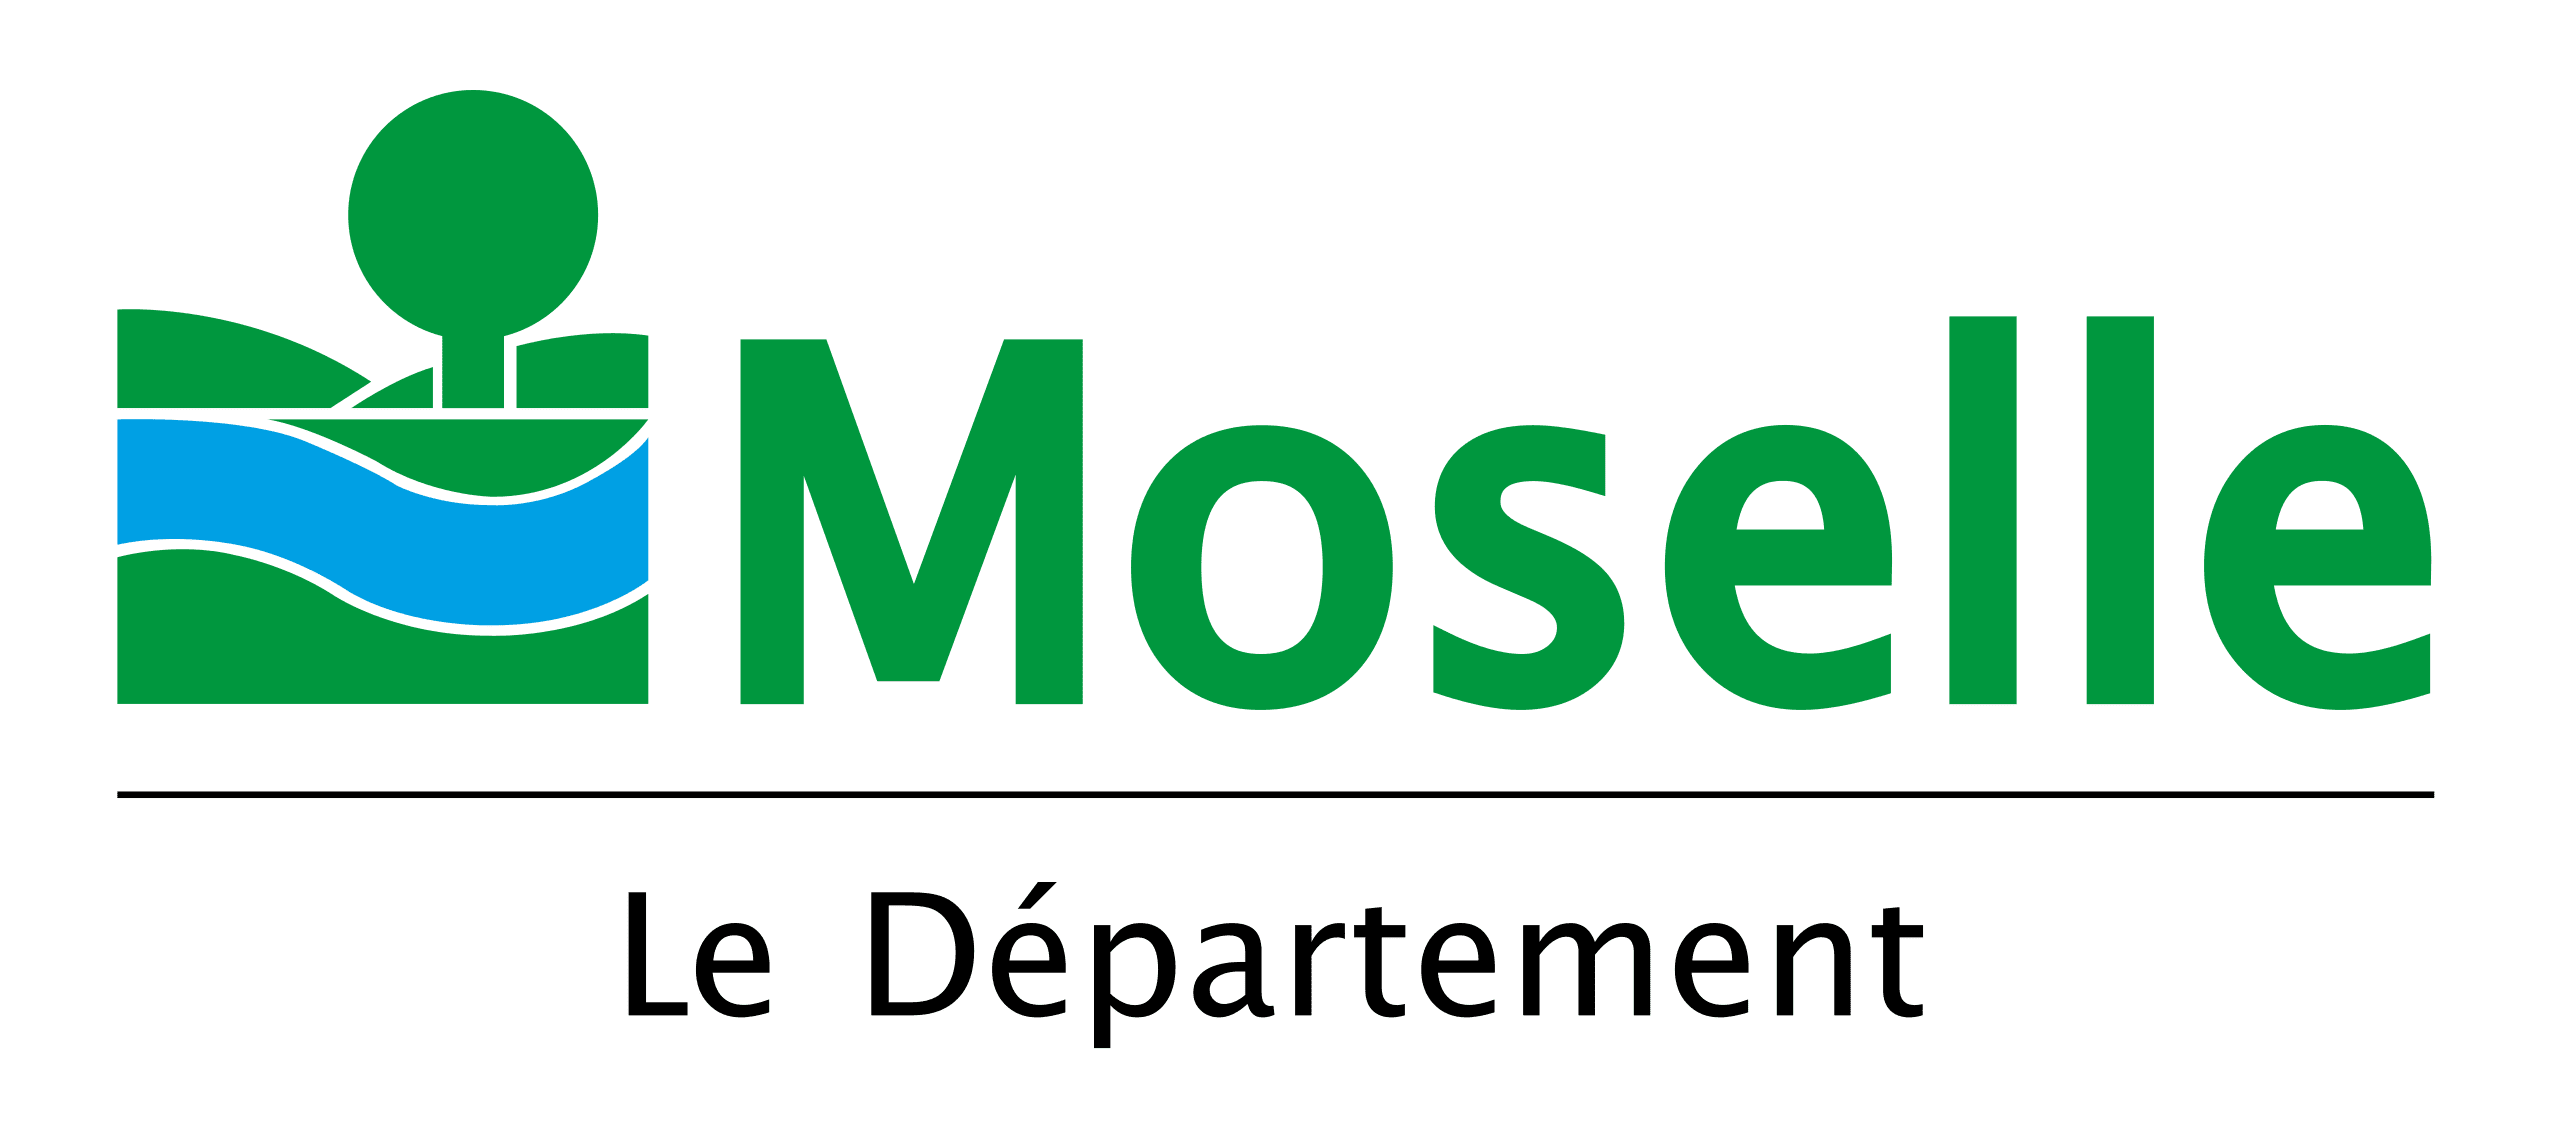 Annonce légale Moselle